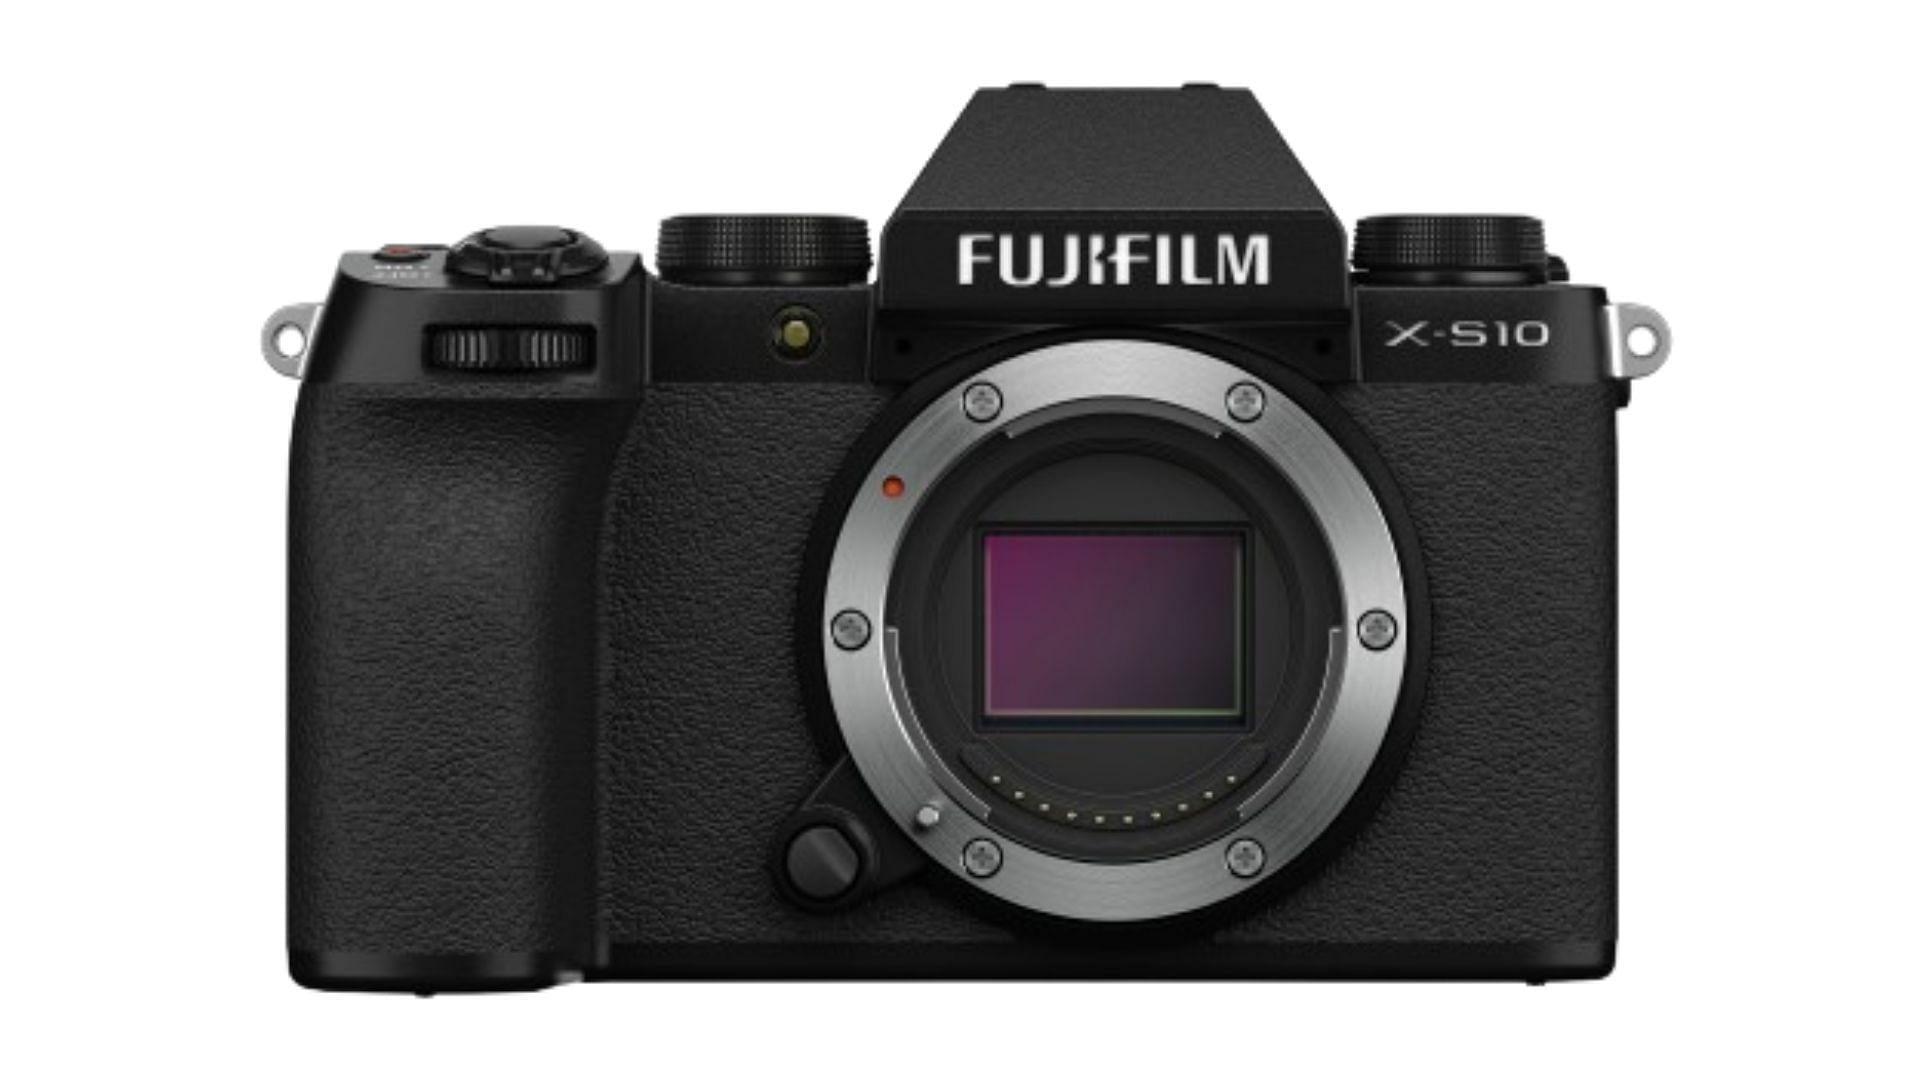 Fujifilm X-S10 (Image via Fujifilm)